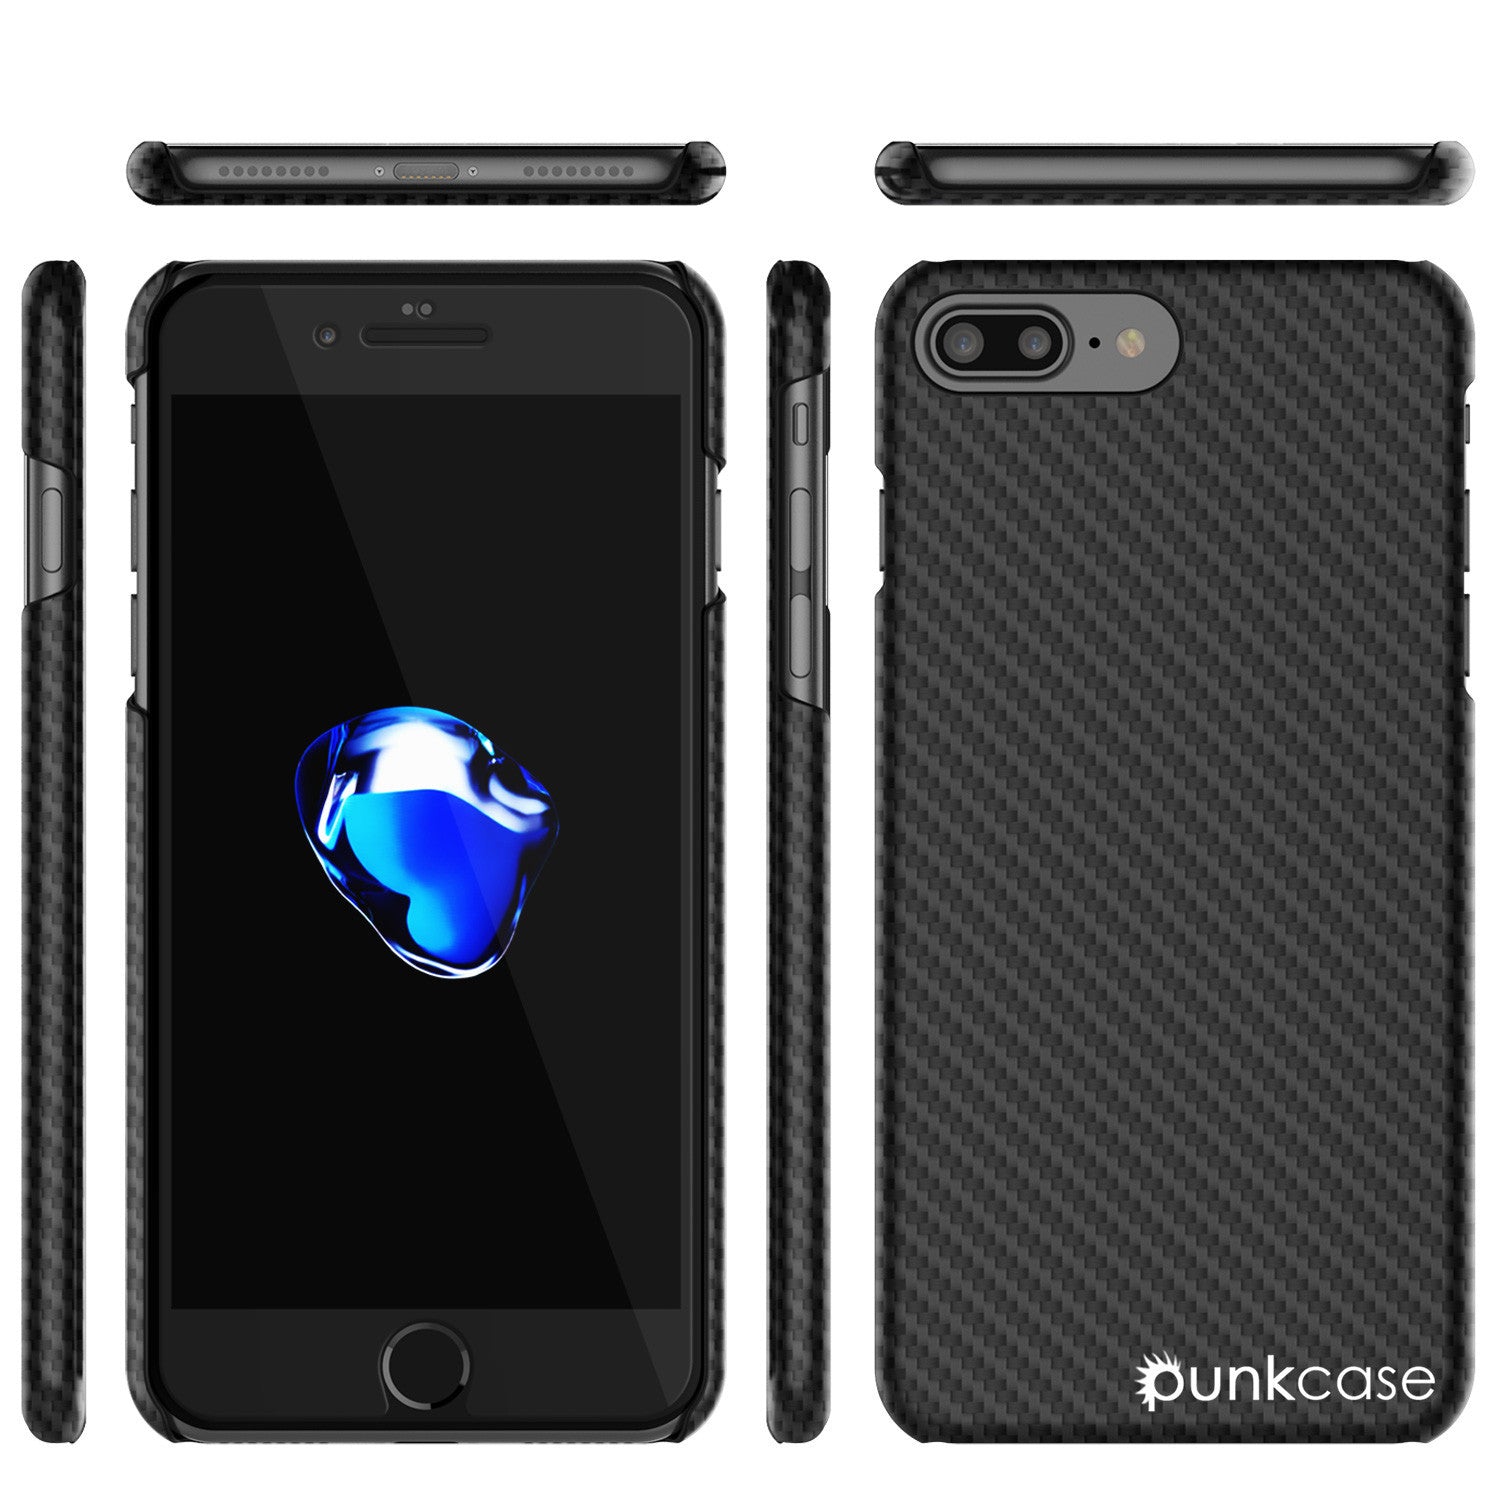 iPhone 7 Plus Case - Punkcase CarbonShield Jet Black